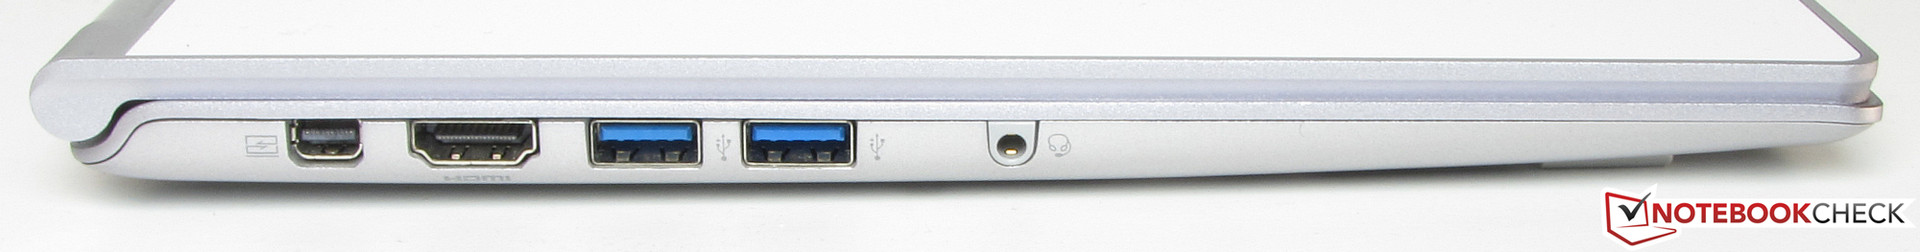 Acer aspire s7-392 ultrabook review | tweaktown